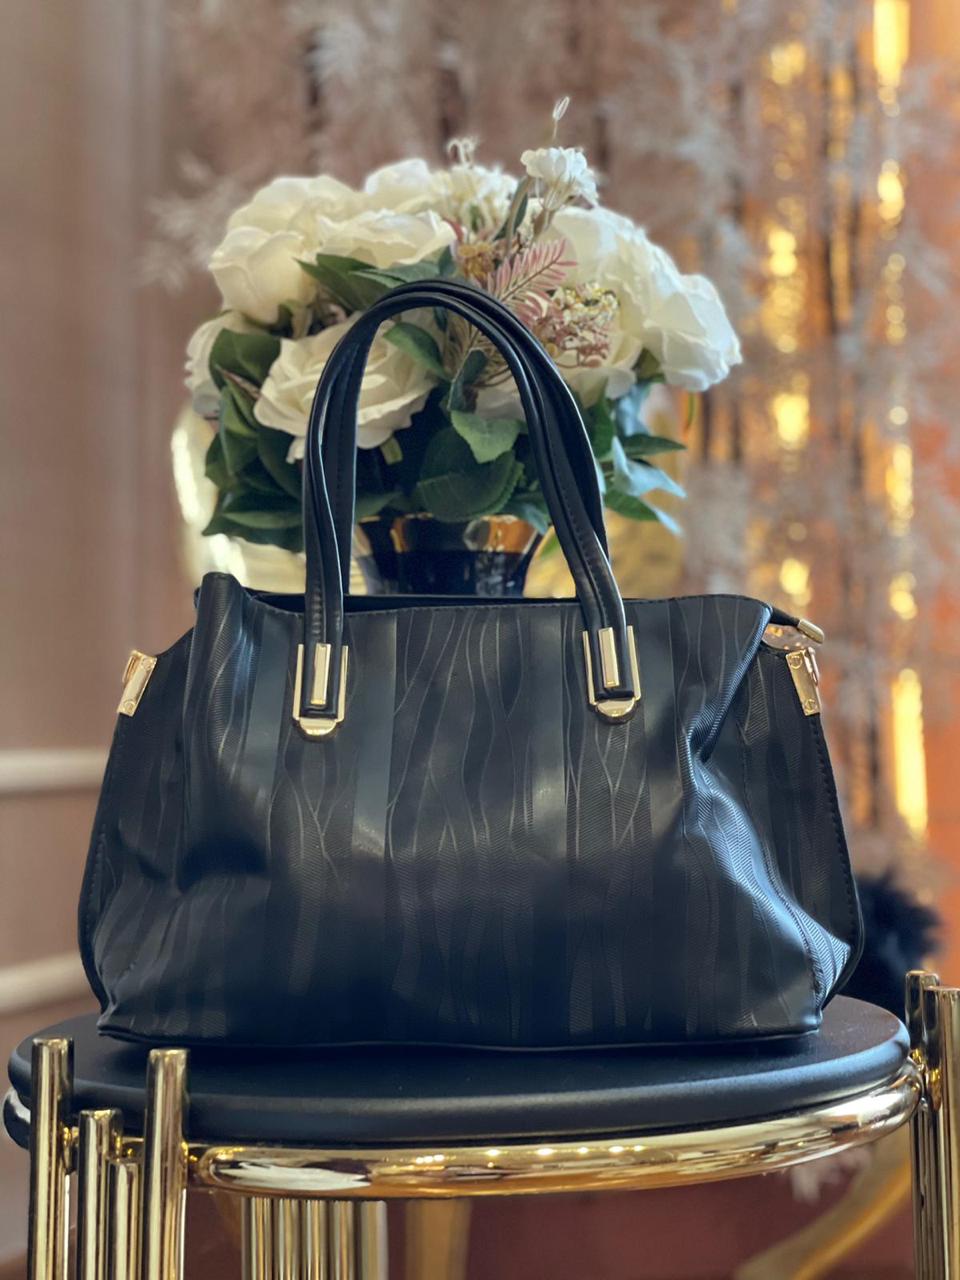 FOXLOVER Women's Multifunctional Leather Satchel Handbag